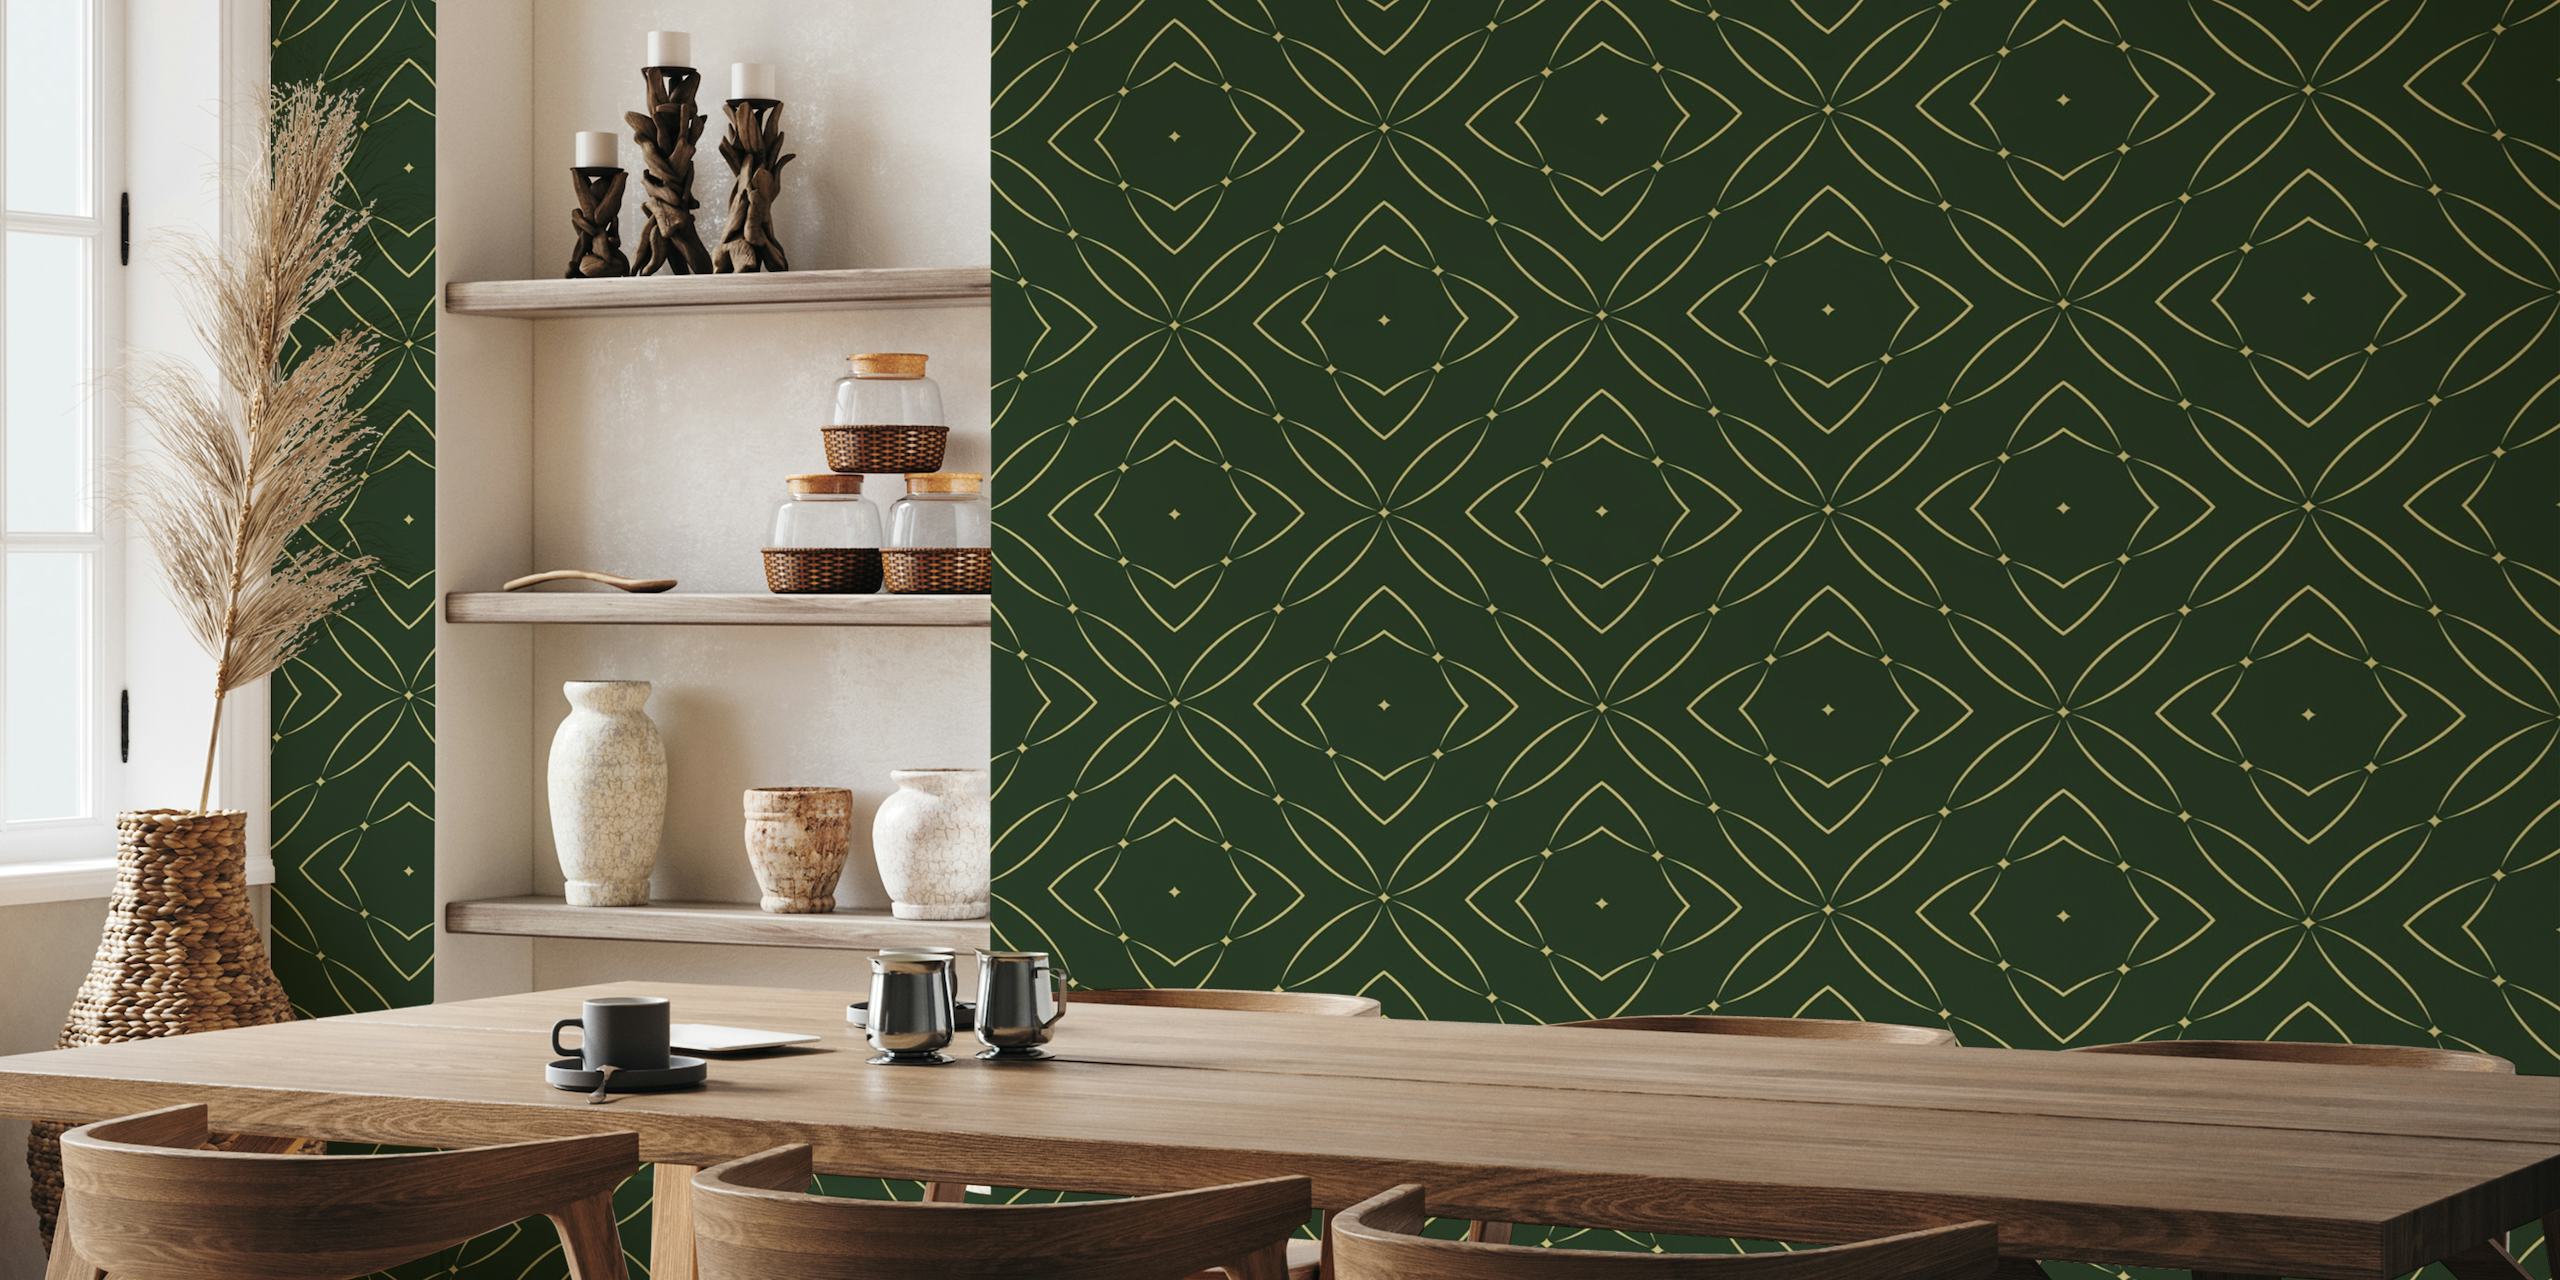 Zidna slika s elegantnim geometrijskim uzorkom u bogatim smaragdnim tonovima